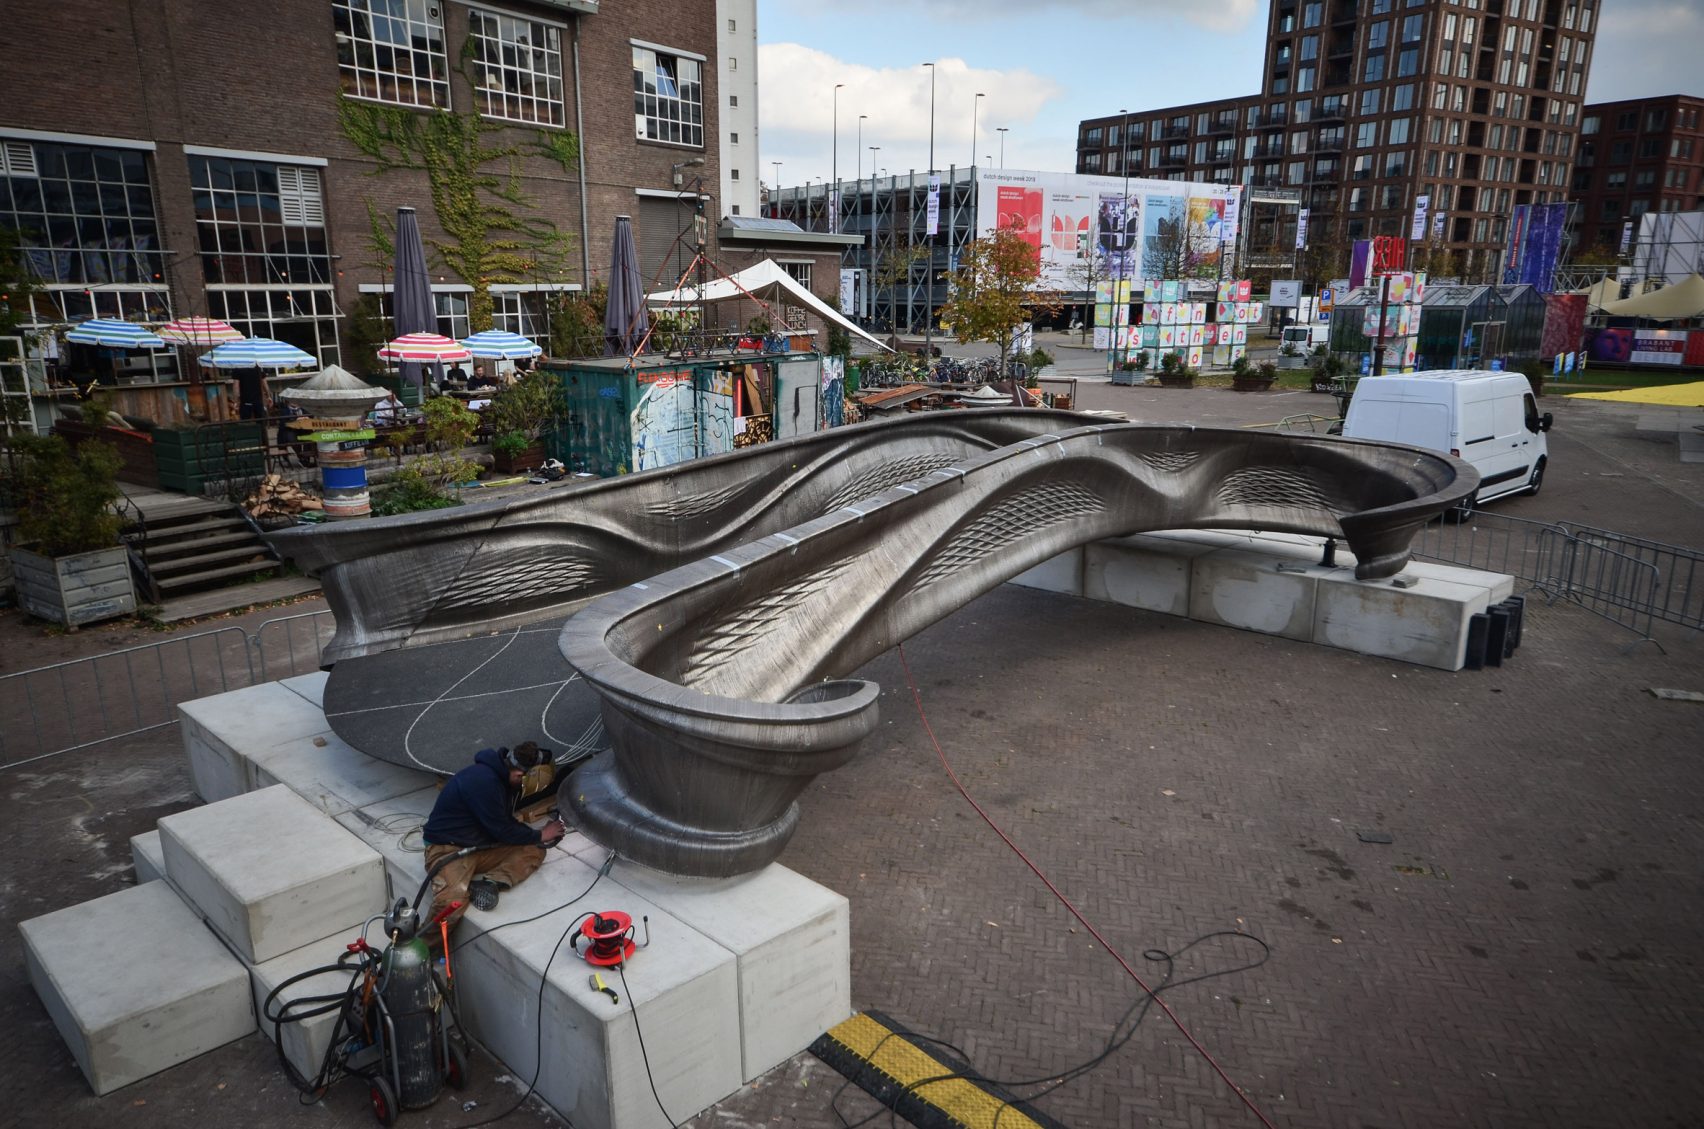 رونمایی از اولین پل فولادی ساخته شده با پرینت سه بعدی در جهان در هفتۀ طراحی هلند